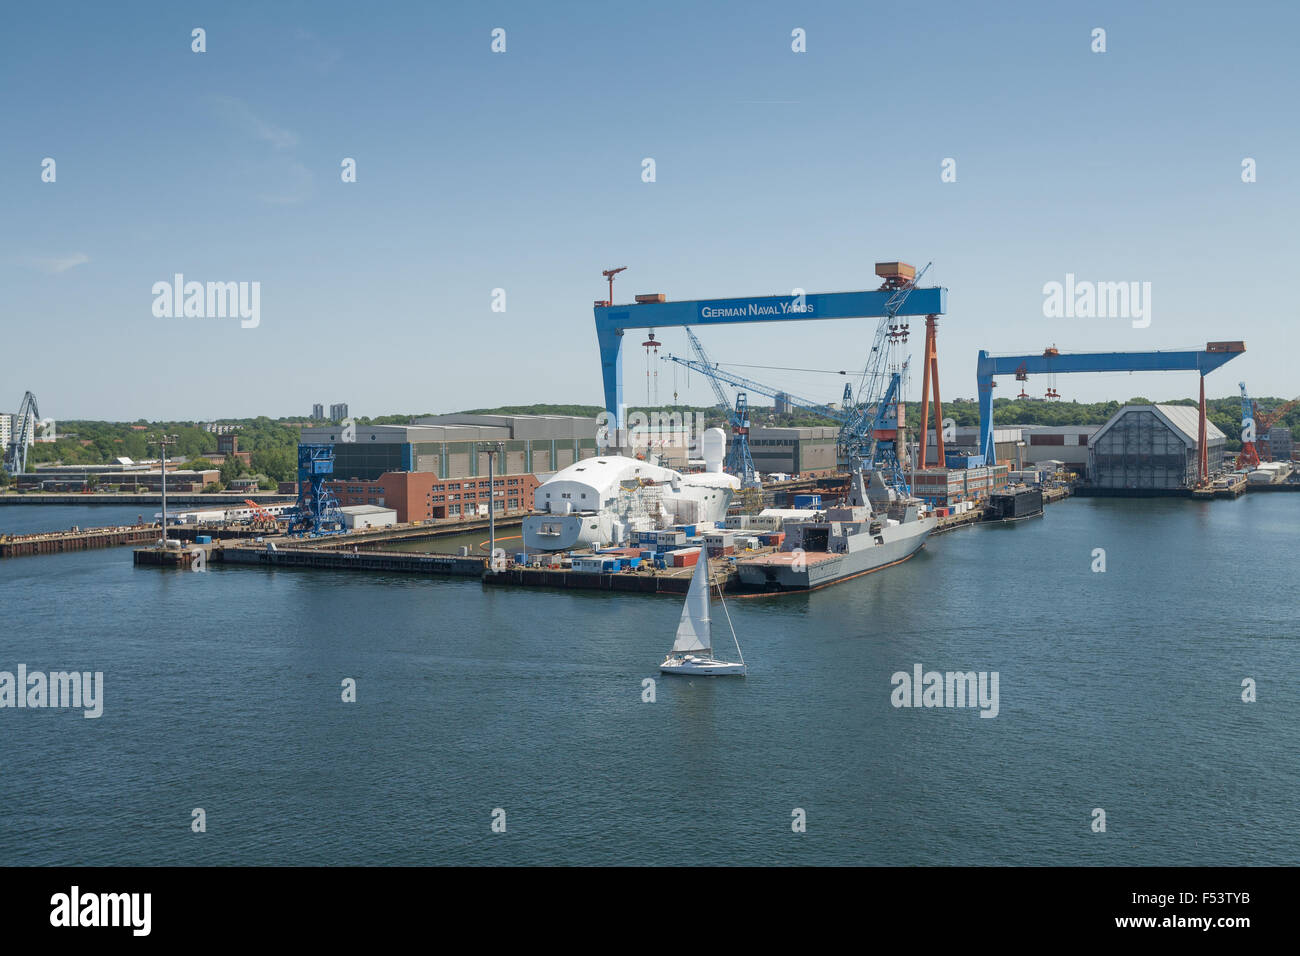 05.06.2015, Kiel, Schleswig-Holstein, Germania - l'ex cantiere HDW tradizione è stato rinominato nel tardo 2012 in ThyssenKrupp Marine Systems GmbH (TKMS). Nella primavera del 2015, il gantry crane ha ricevuto una nuova livrea con la scritta in tedesco cantieri navali. 0PR150605D018CAROEX.JPG - non per la vendita in G E R M A N Y, A U S T R I A, S W I T Z e R L A N D [modello di rilascio: non applicabile, la proprietà di rilascio: NO (c) caro agenzia fotografica / spinto, http://www.caro-images.pl, info@carofoto.pl - nel caso di utilizzo di foto per non-scopi giornalistici, siete pregati di contattare l'Agenzia - la foto è soggetto a royalty!] Foto Stock